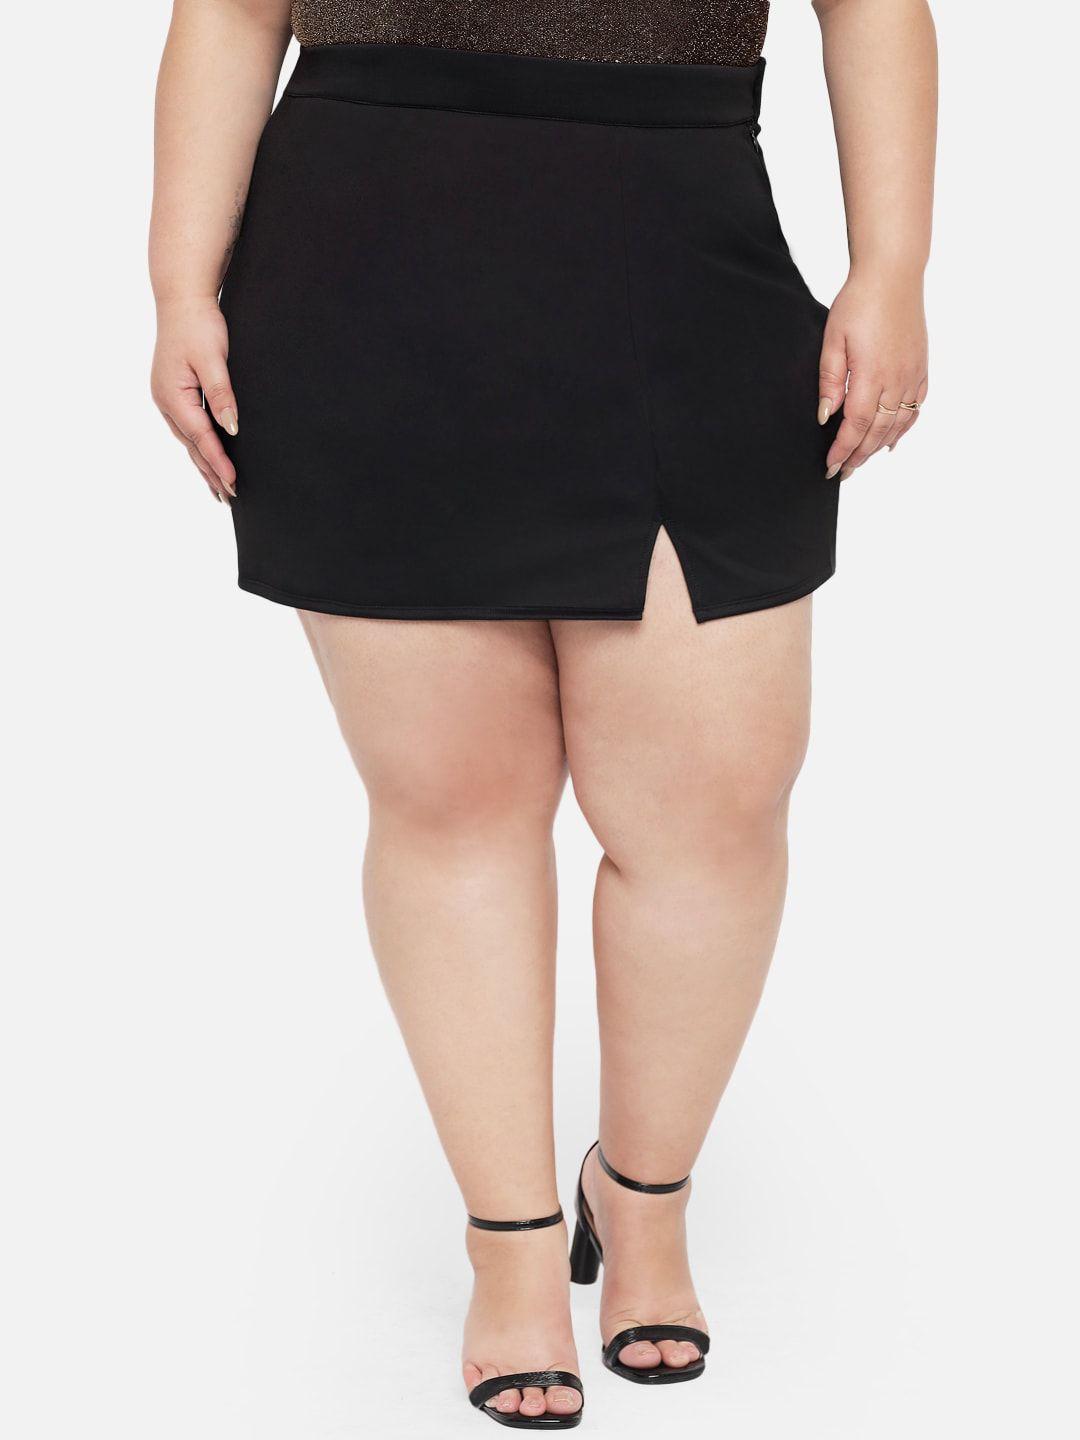 wild-u-plus-size-women-black-solid-mini-pencil-skirt